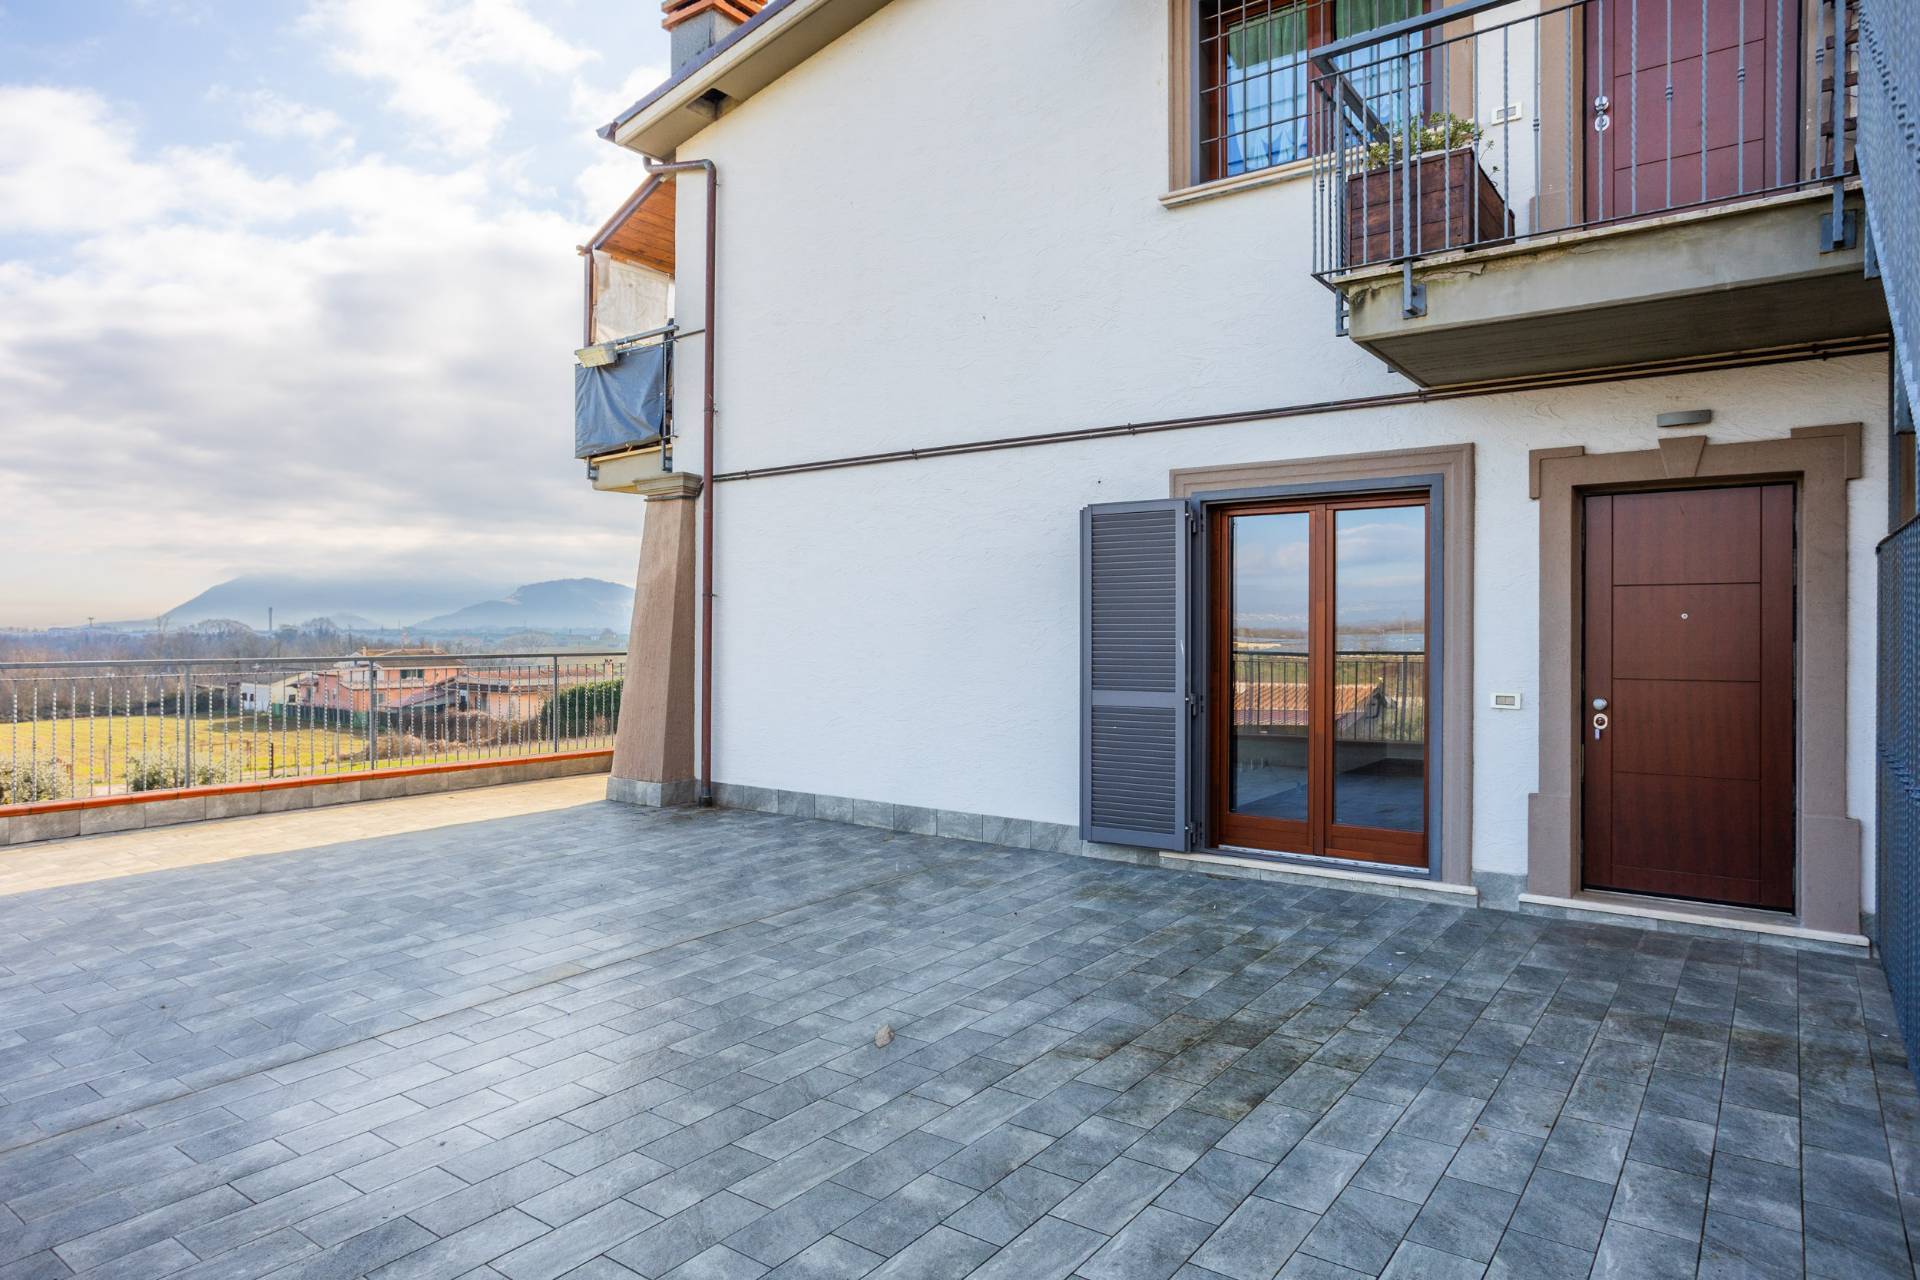 Appartamento in vendita a Valmontone, 2 locali, prezzo € 80.000 | PortaleAgenzieImmobiliari.it